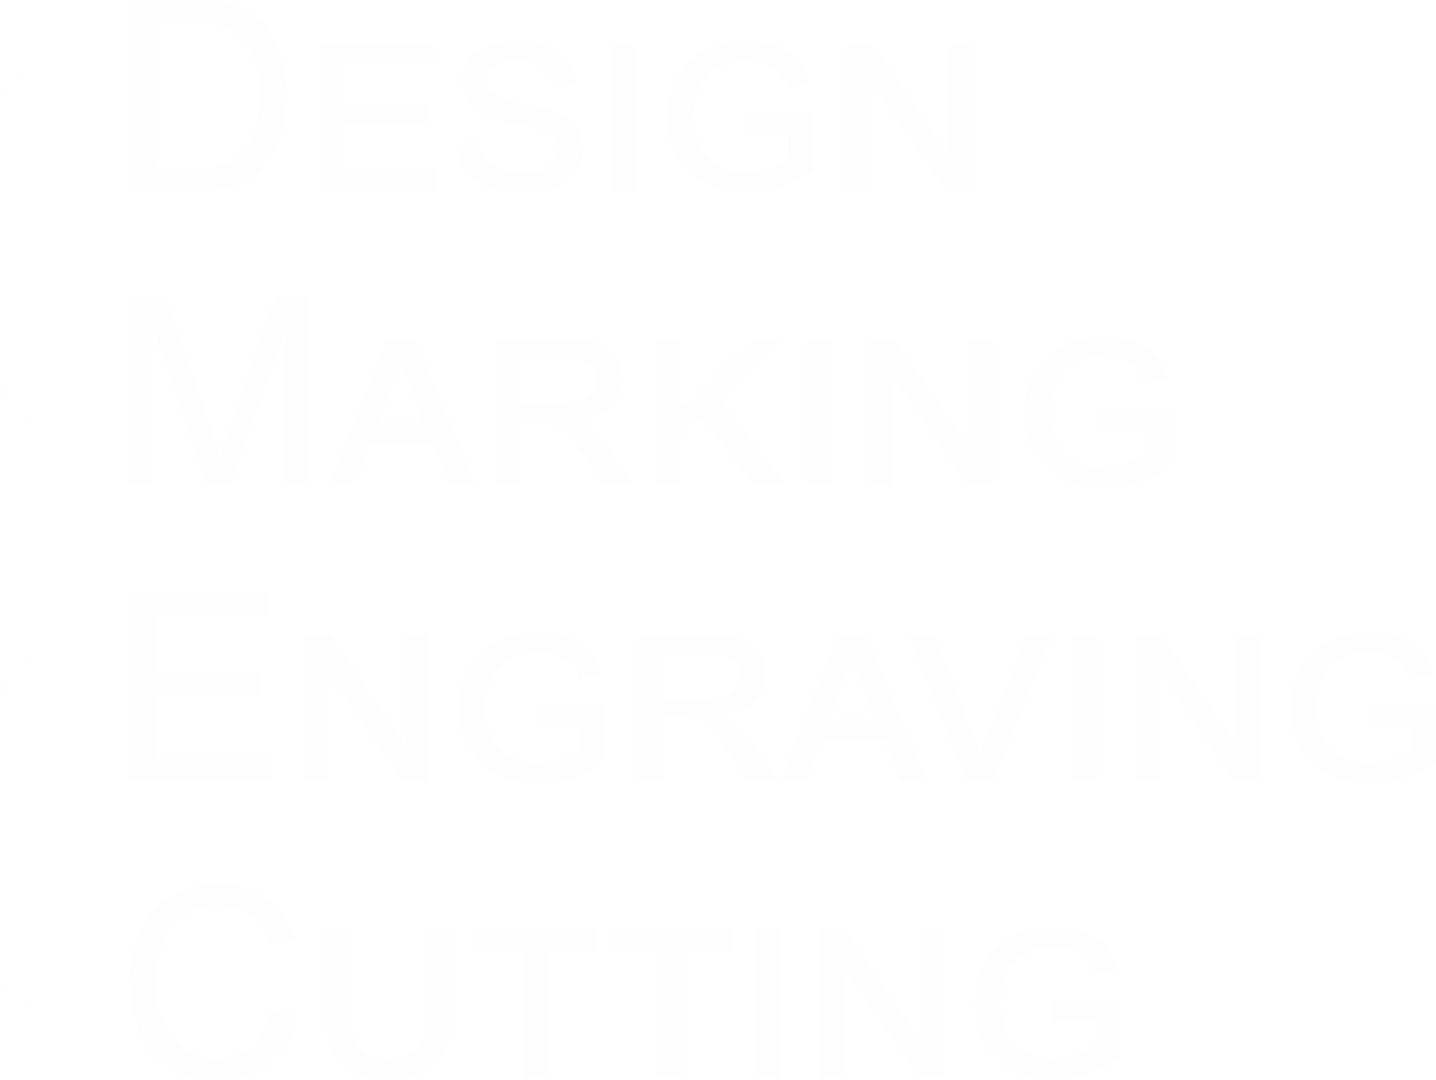 design marking engraving cutting